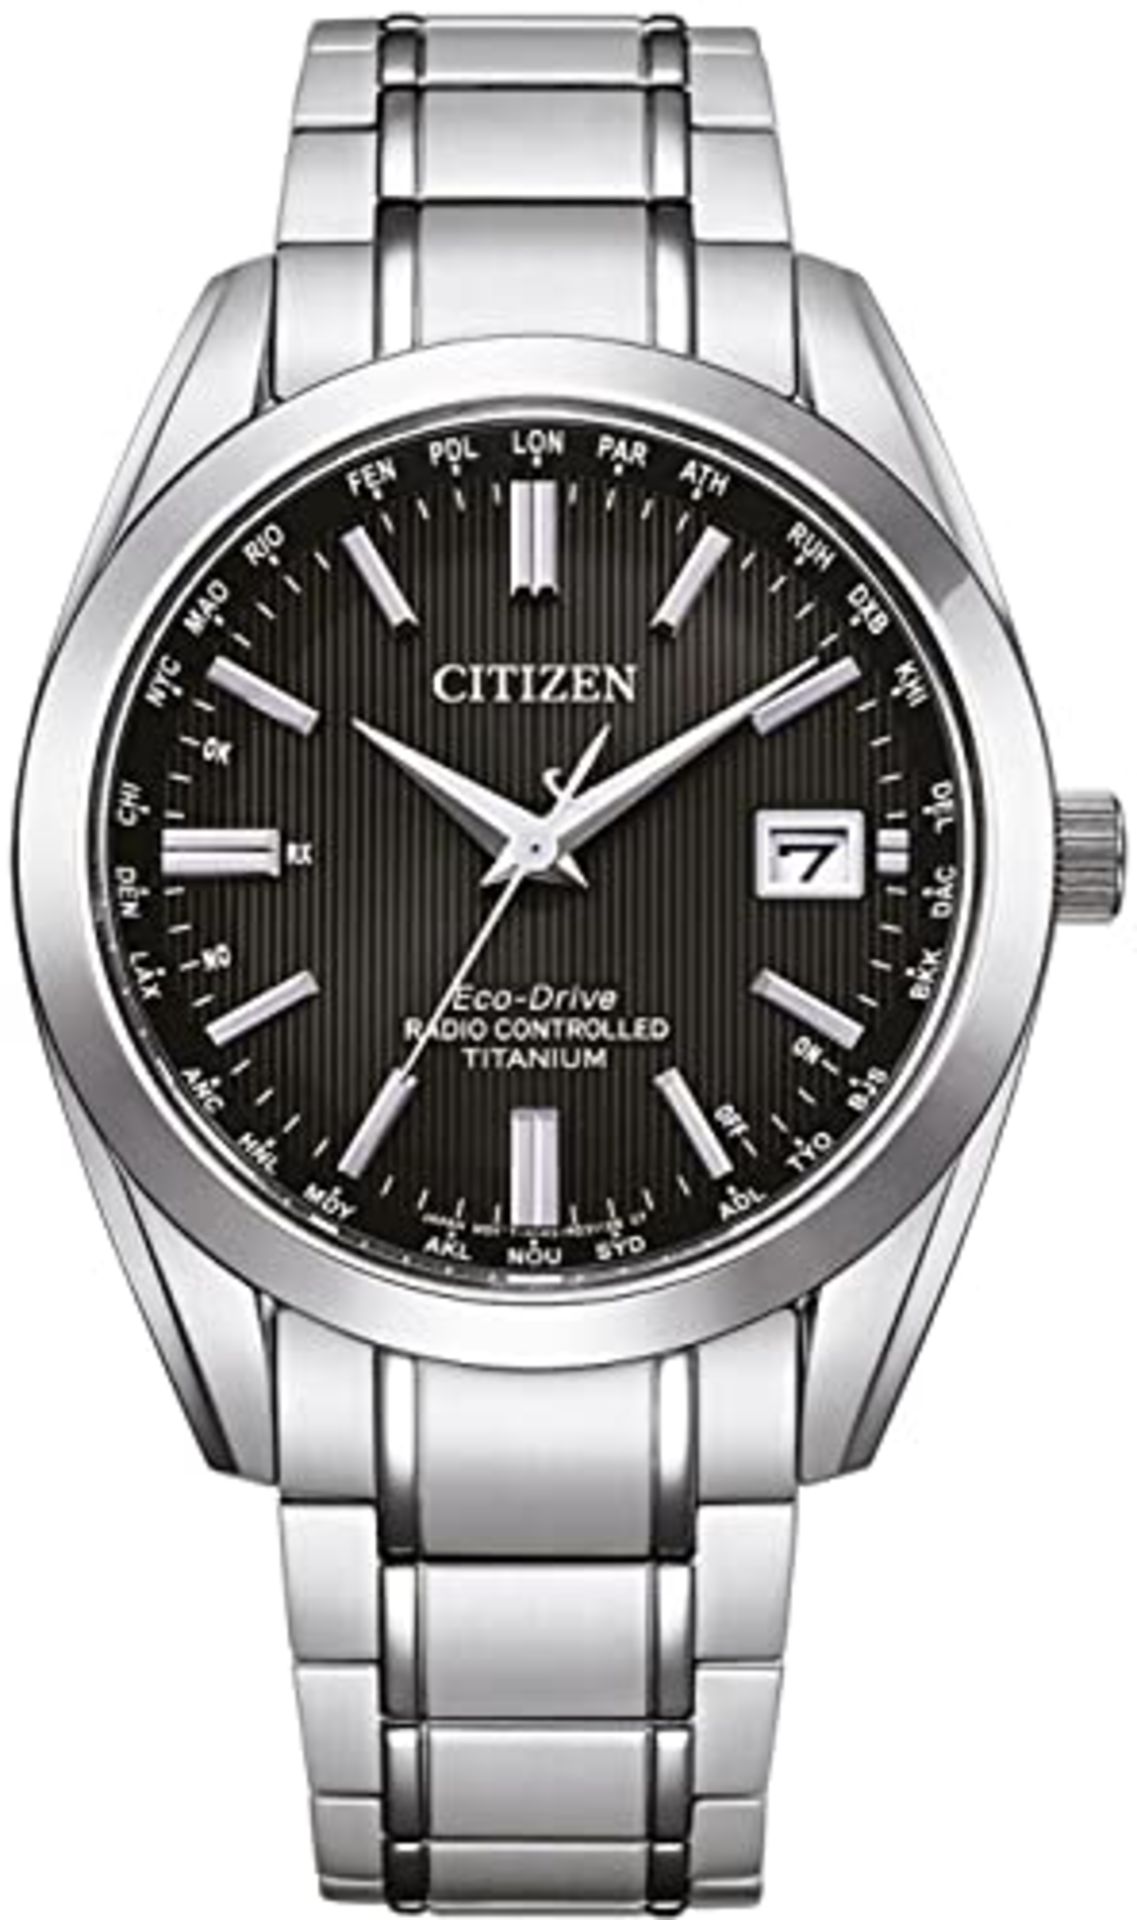 RRP £449.00 Citizen Men's Analog Solar Watch with Titanium Bracelet CB0260-81E